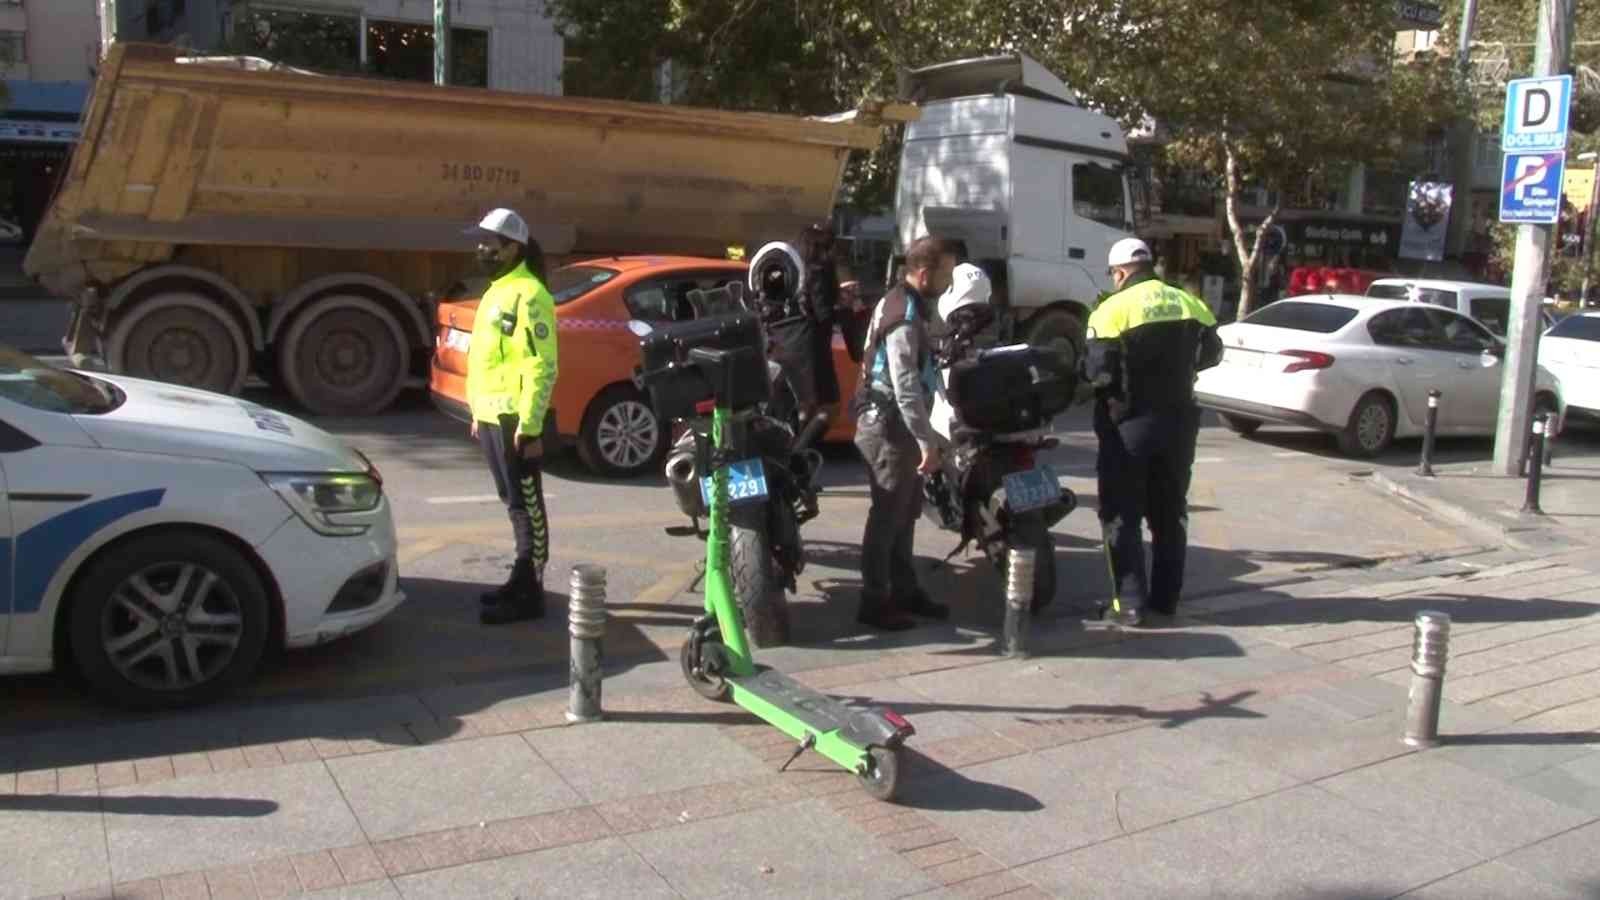 Kadıköy’de elektrikli scooter denetimi gerçekleştirildi #istanbul